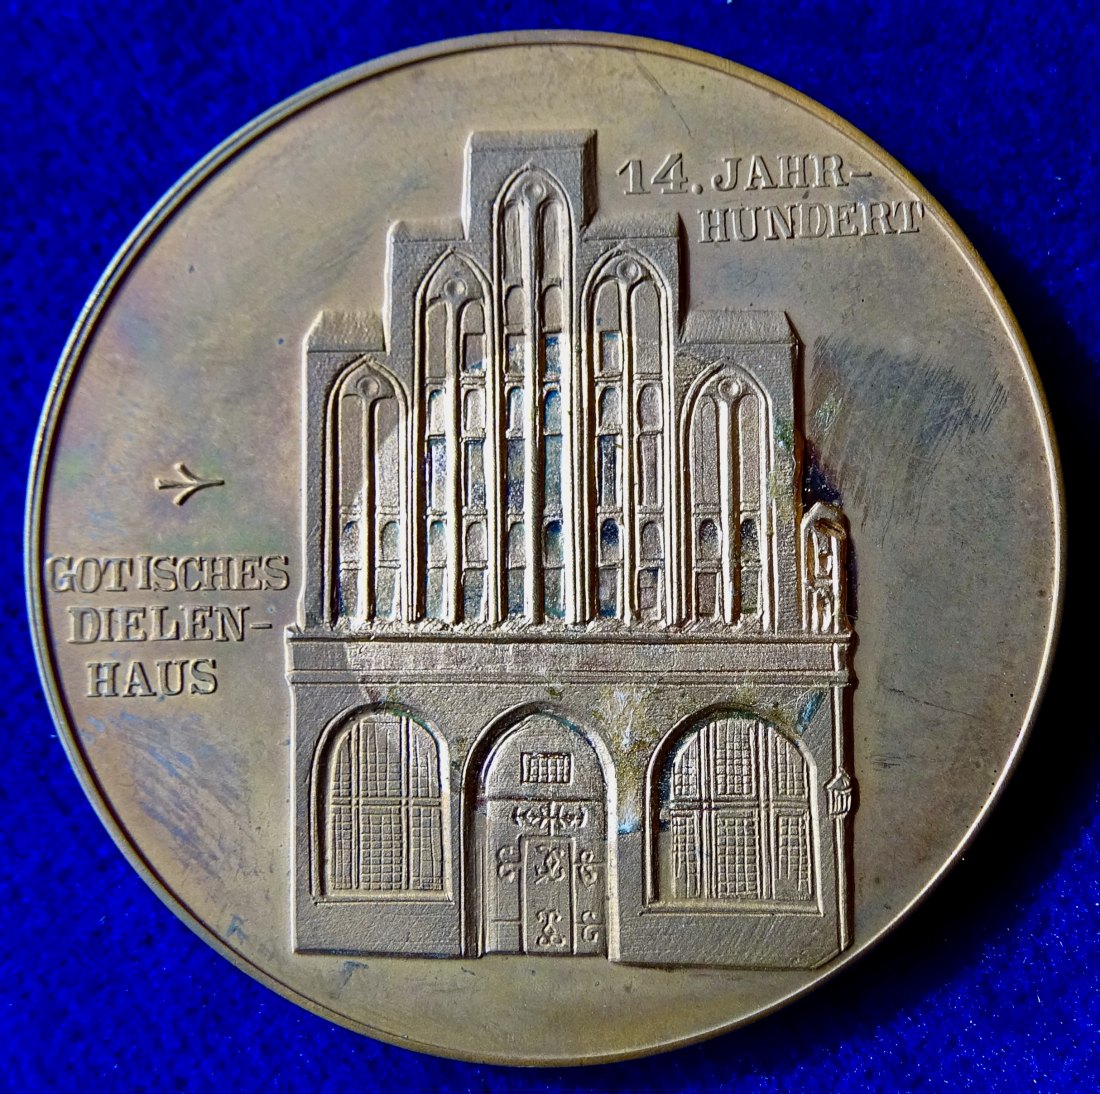  Stralsund Kogge der Hanse und gotisches Dielenhaus. Numisnautikmedaille 1987 von Helmut König.   